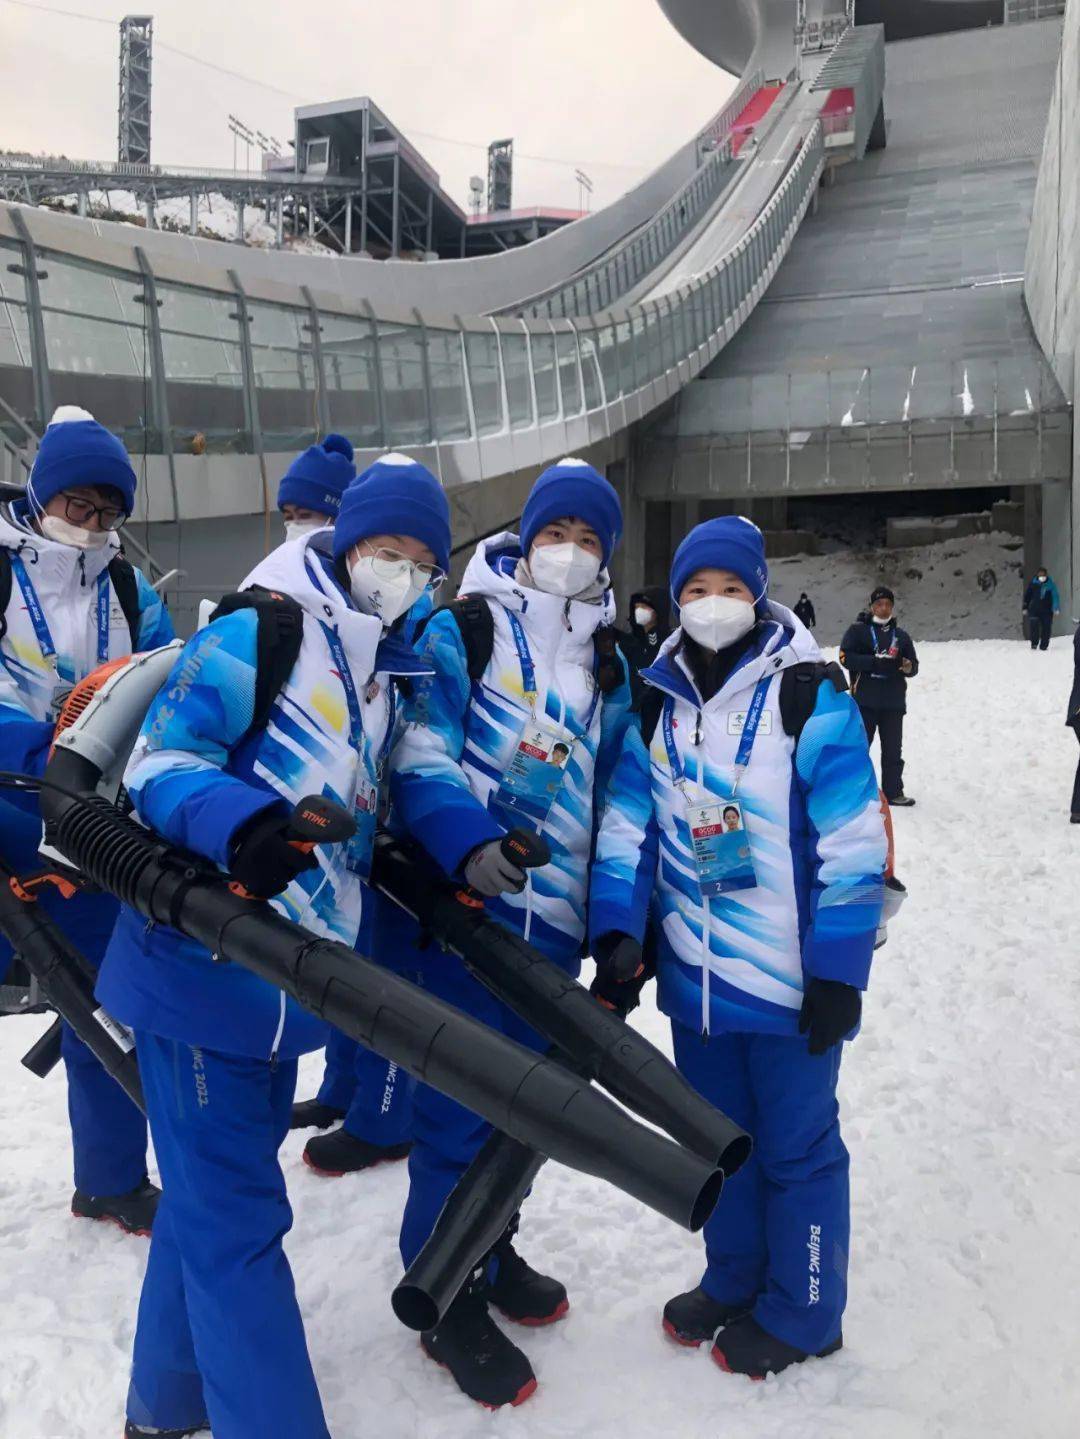 冬奥会志愿者素材图片